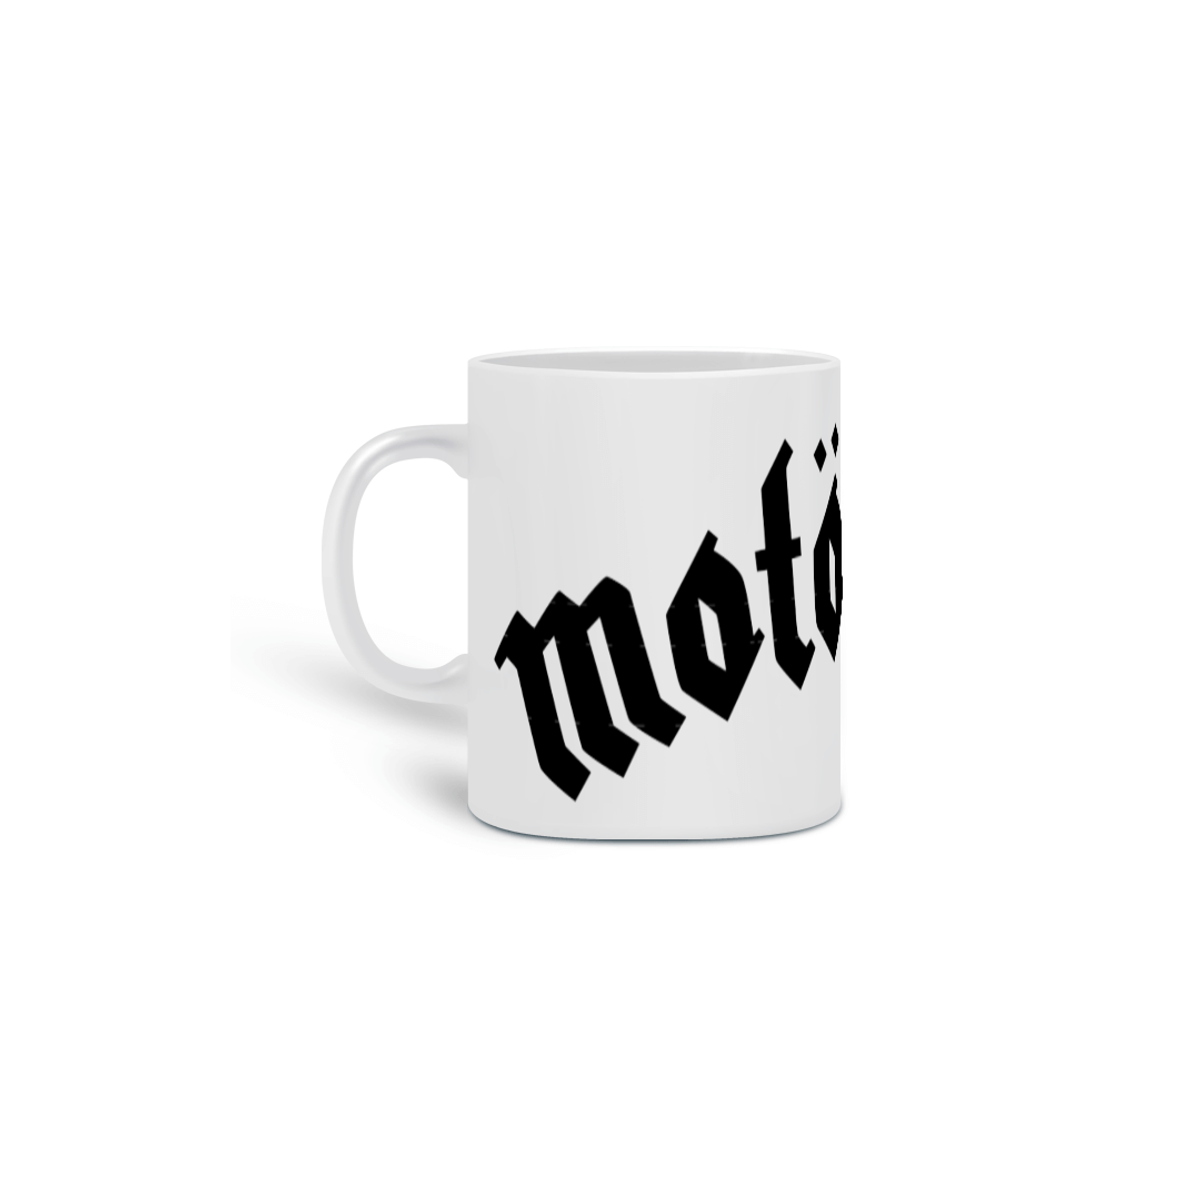 Nome do produto: Motörhead